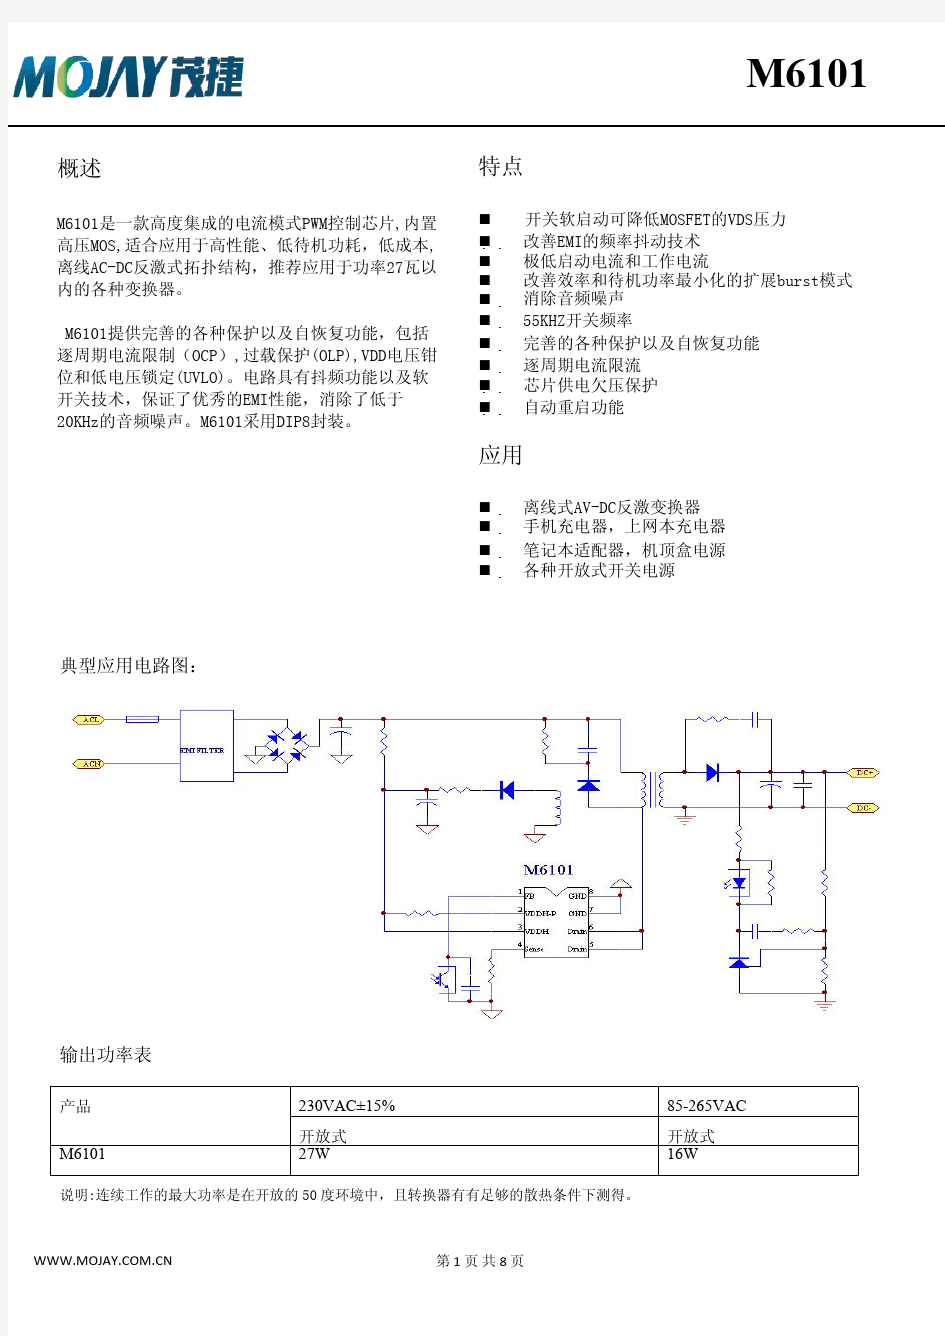 茂捷M6101规格书(中文)_Rev.1.1